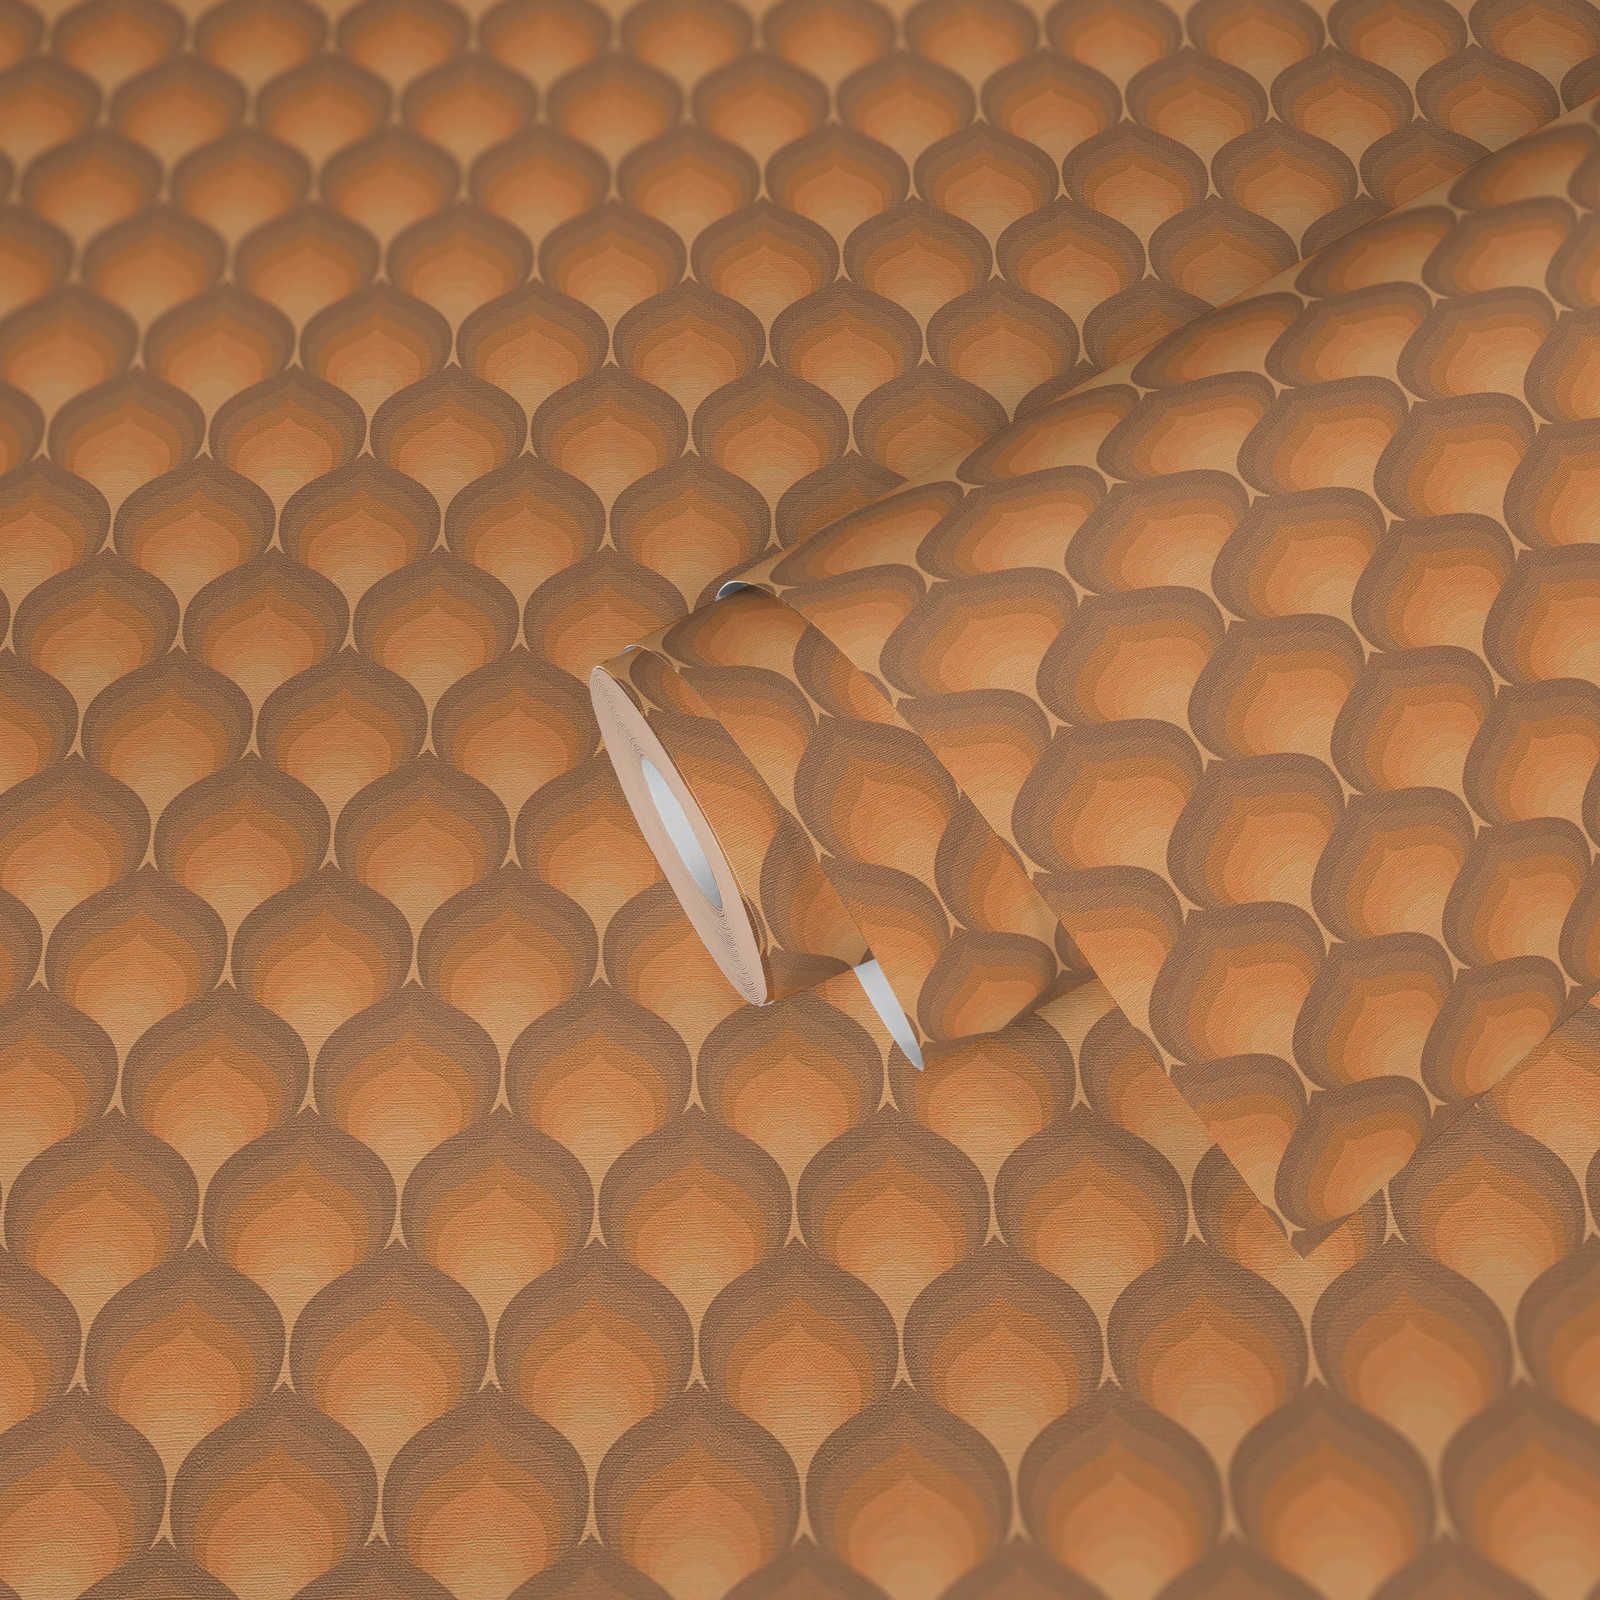             Retro Tapete mit strukturierten Schuppenmuster – Braun, Gelb, Orange
        